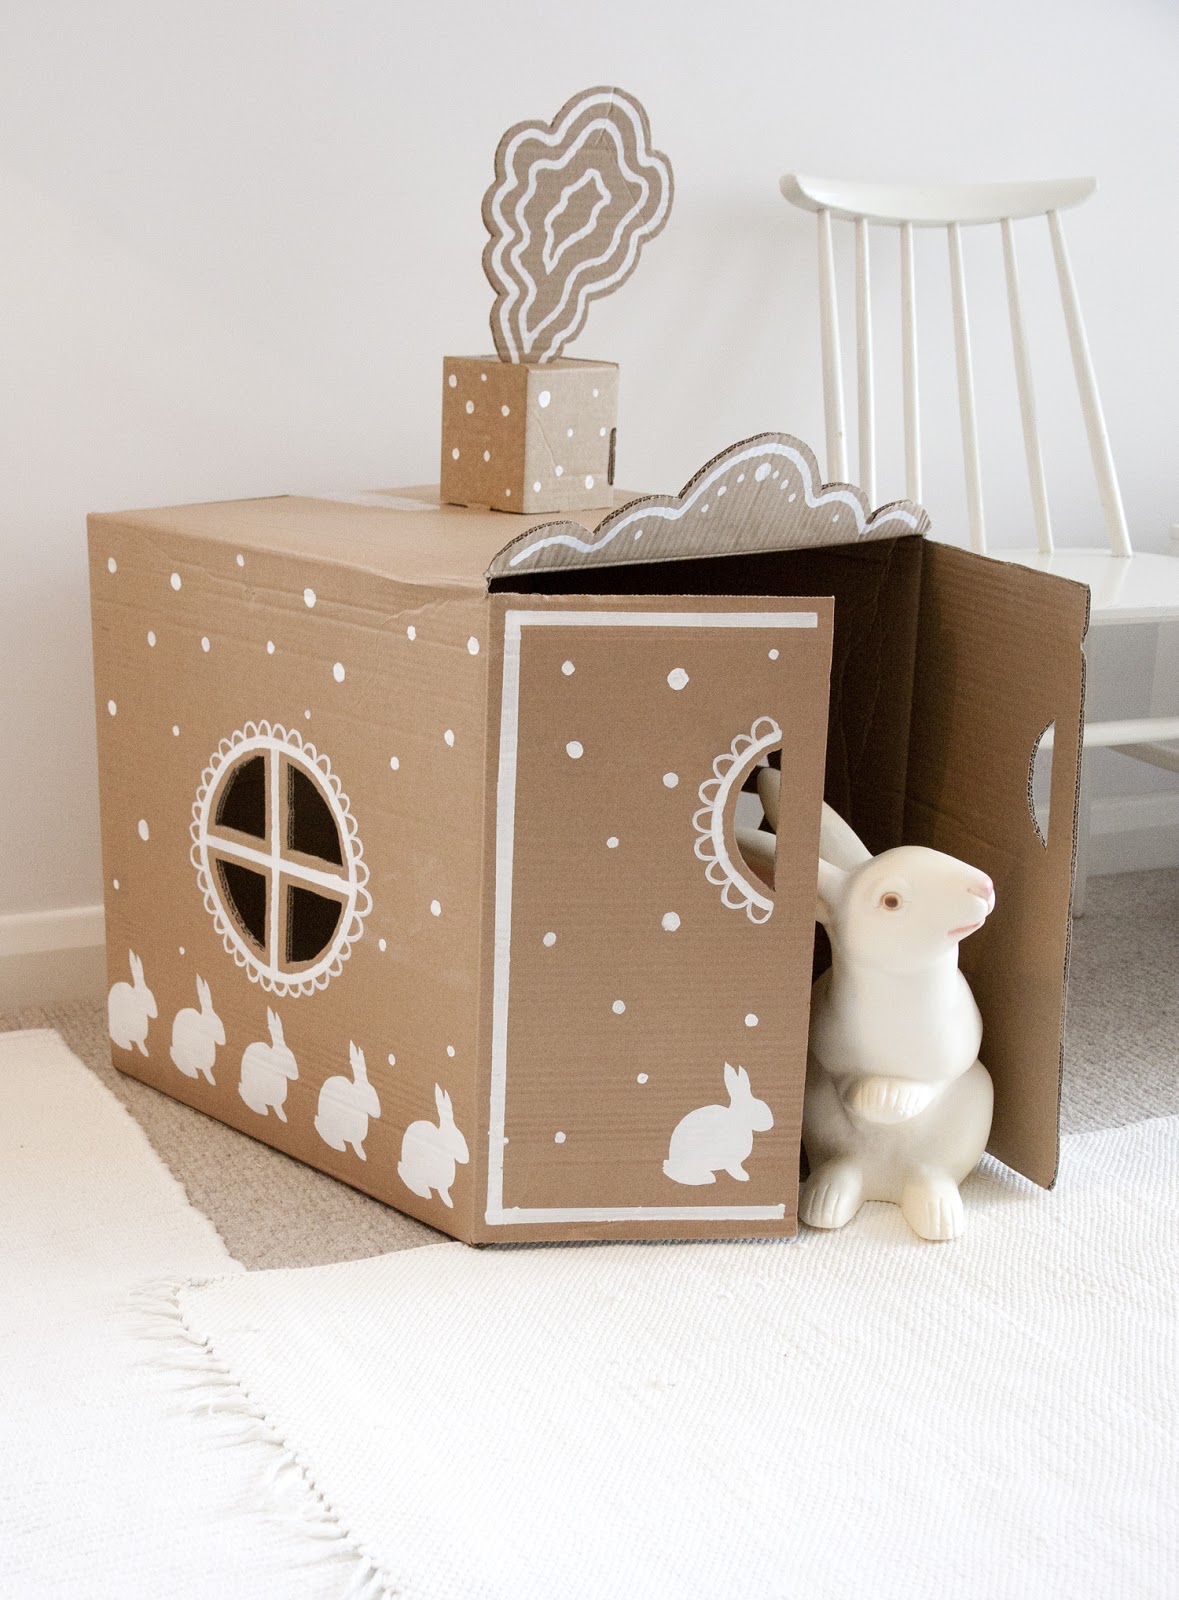 UKKONOOA: Pahvimaja / DIY Cardboard Box House
